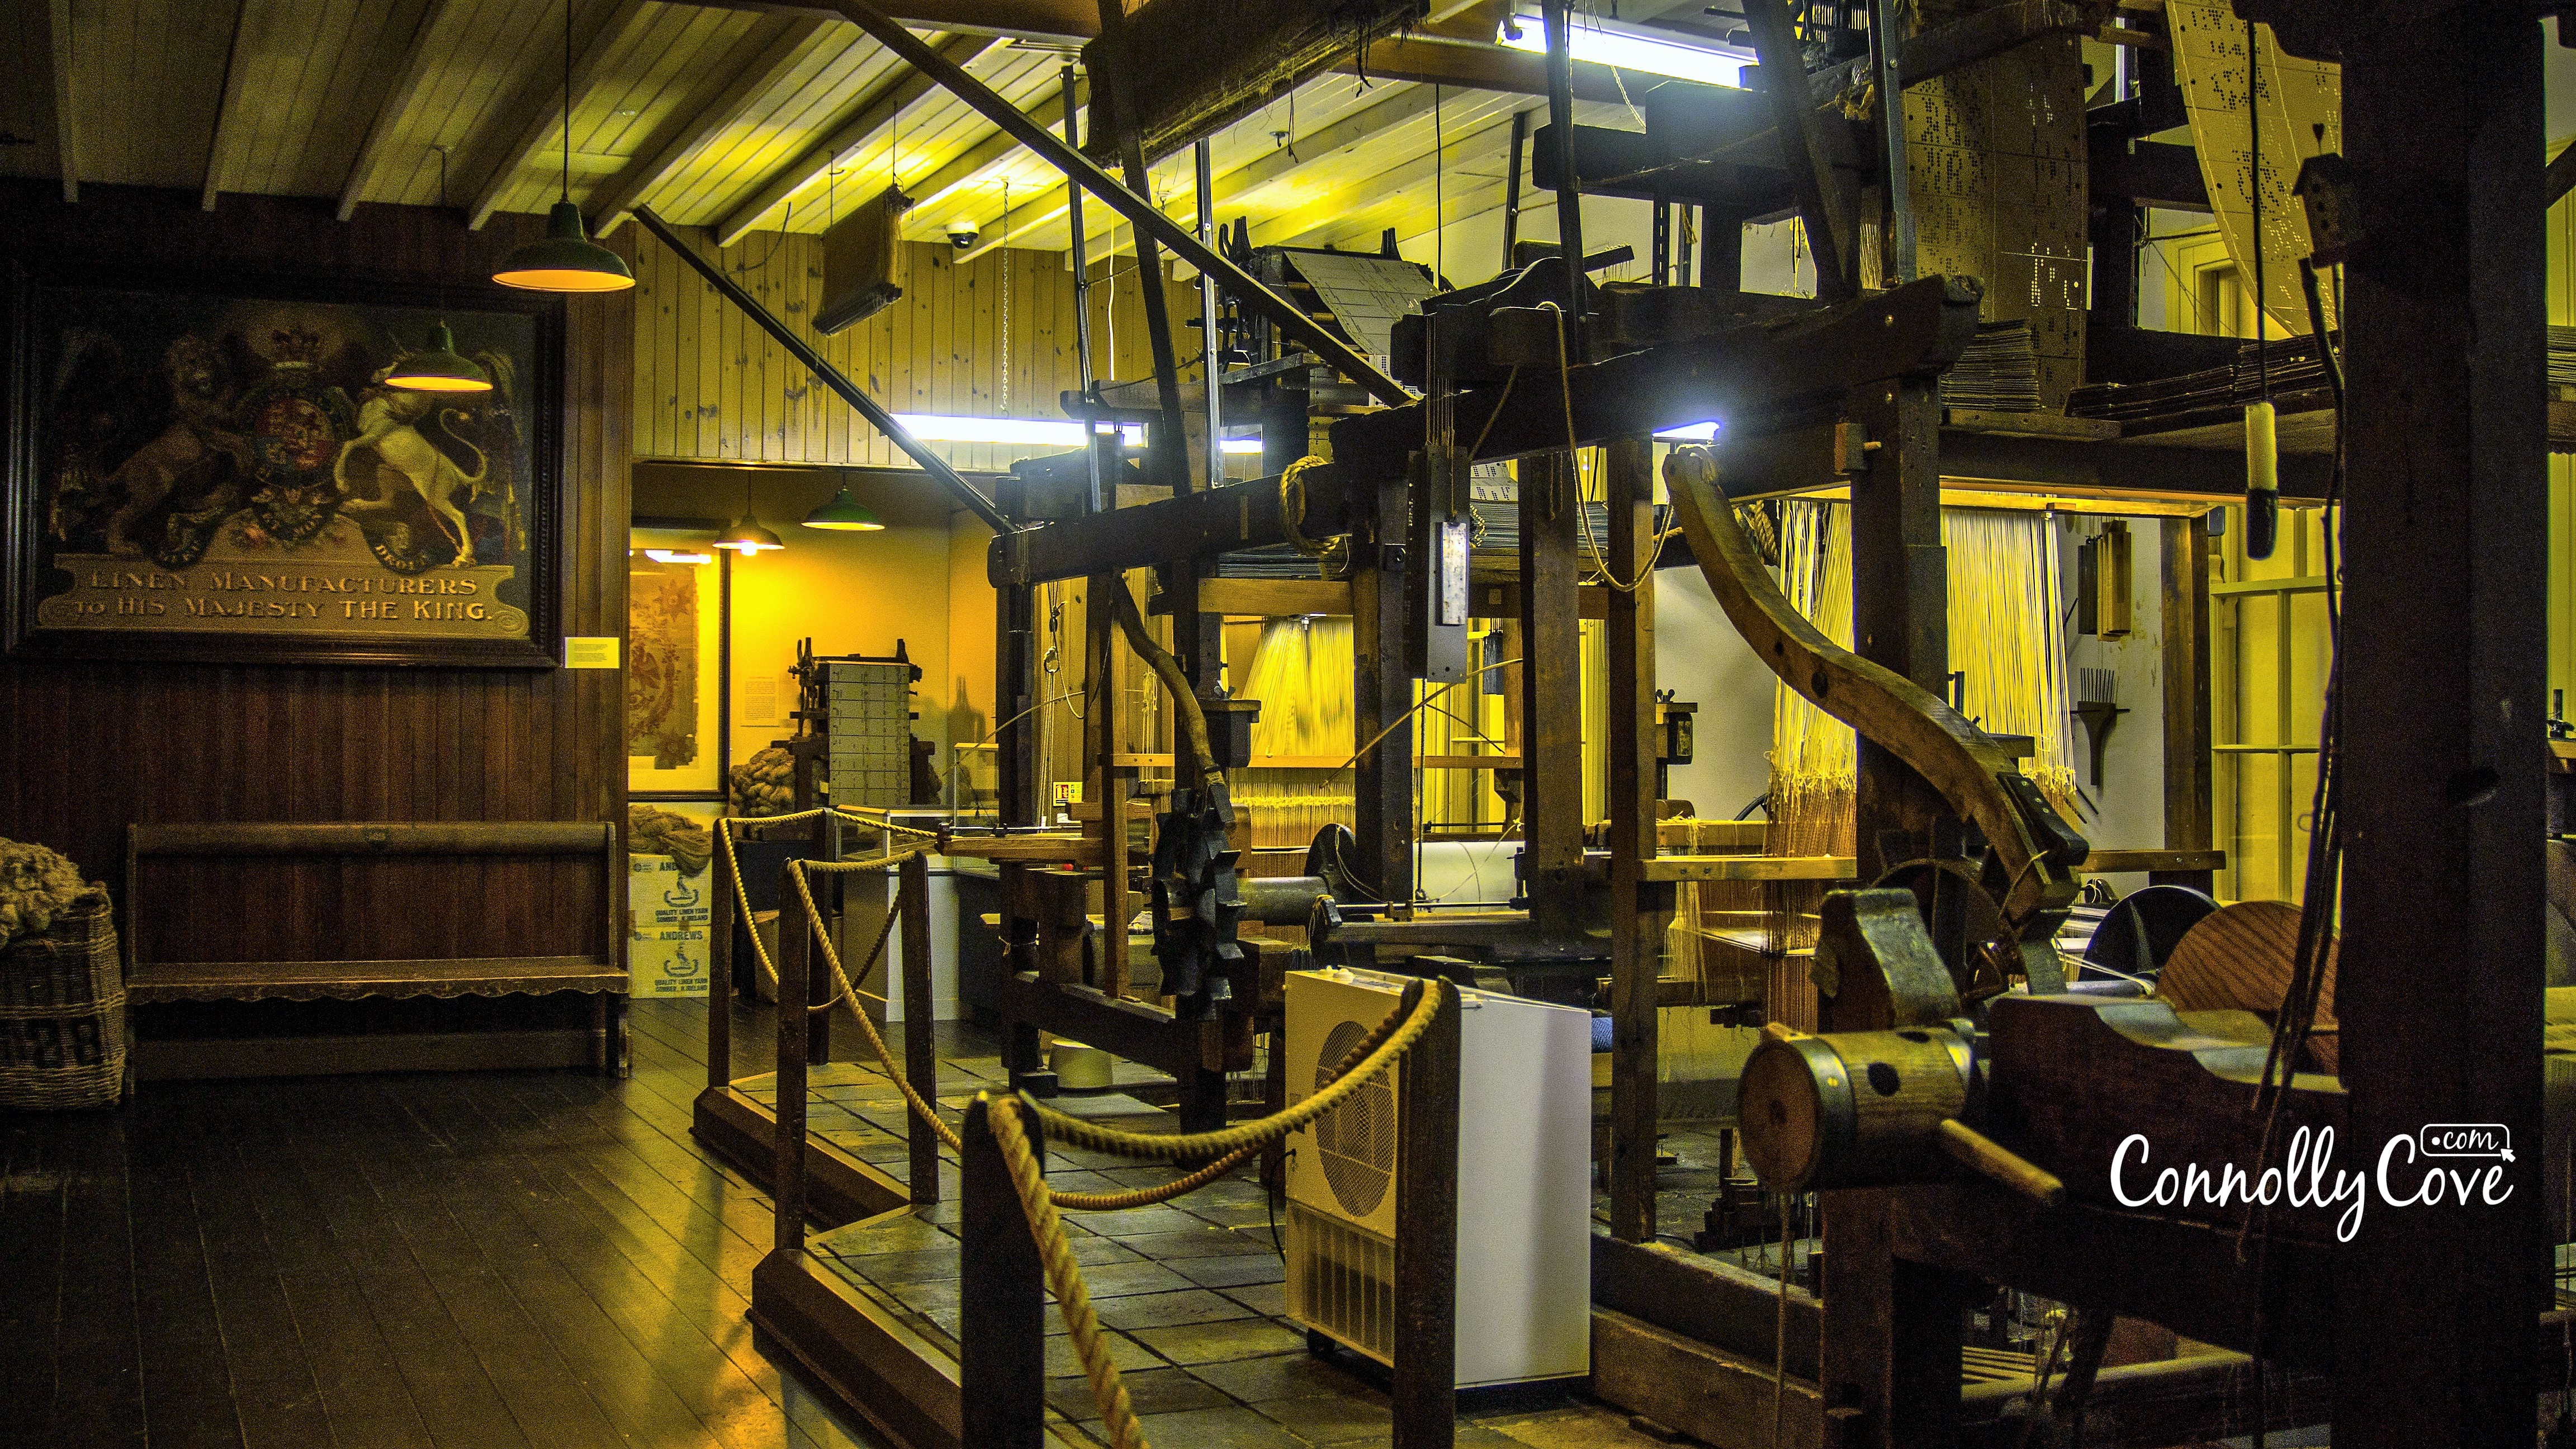 Irish Linen Museum